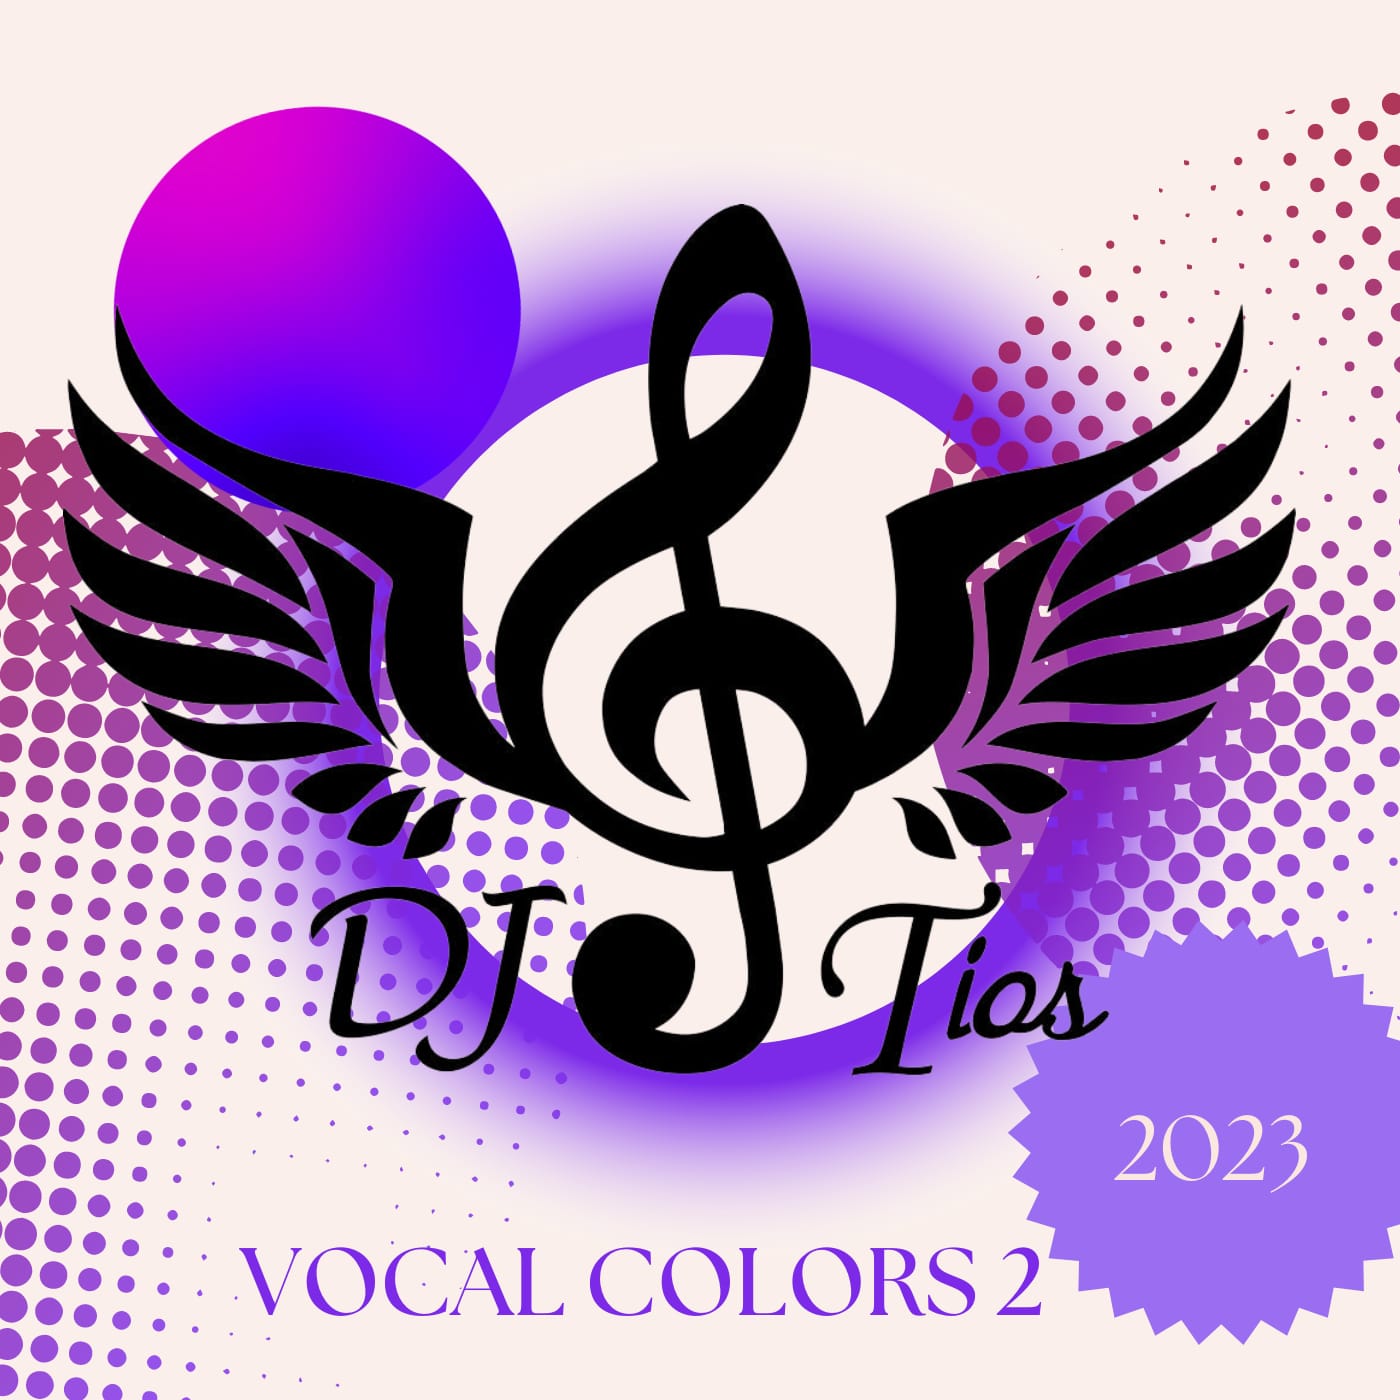 DJ Tios - Vocal Colors 2 CD Cover